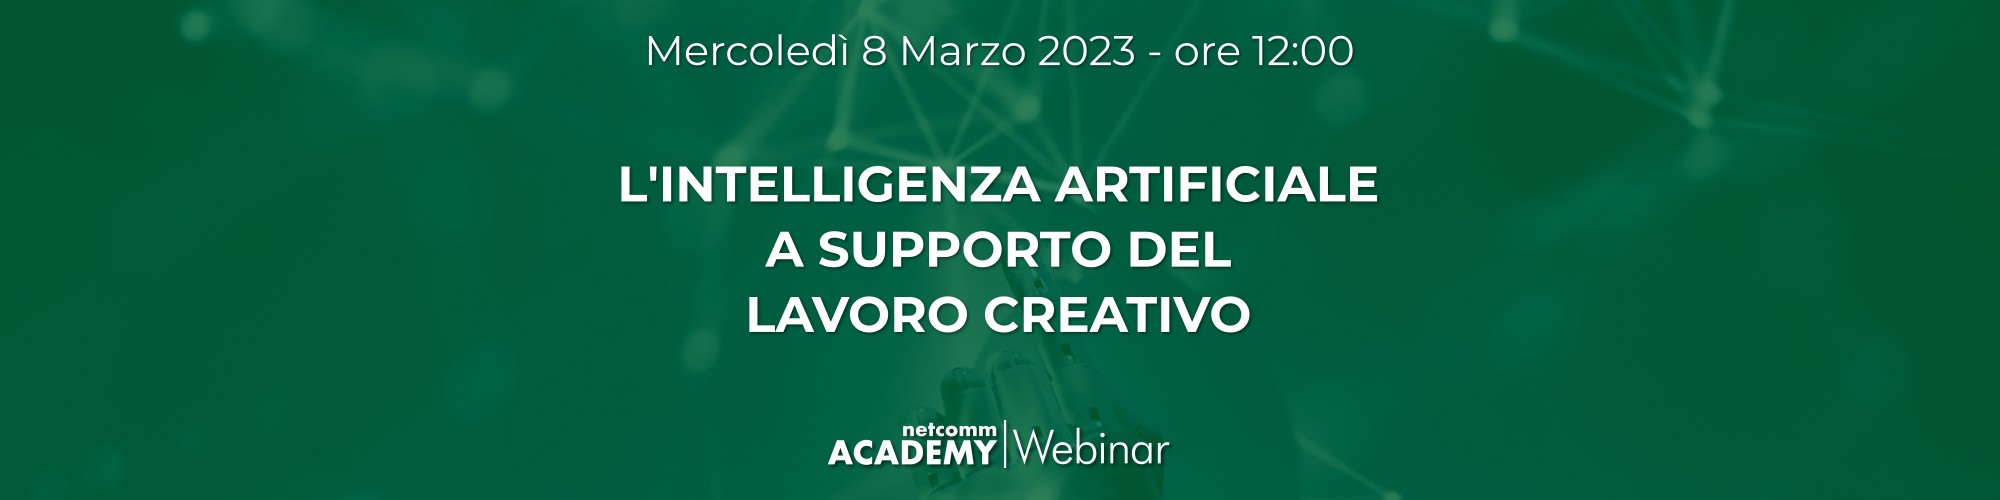 intelligenza-artificiale-supporto-lavoro-creativo_webinar-netcomm-academy